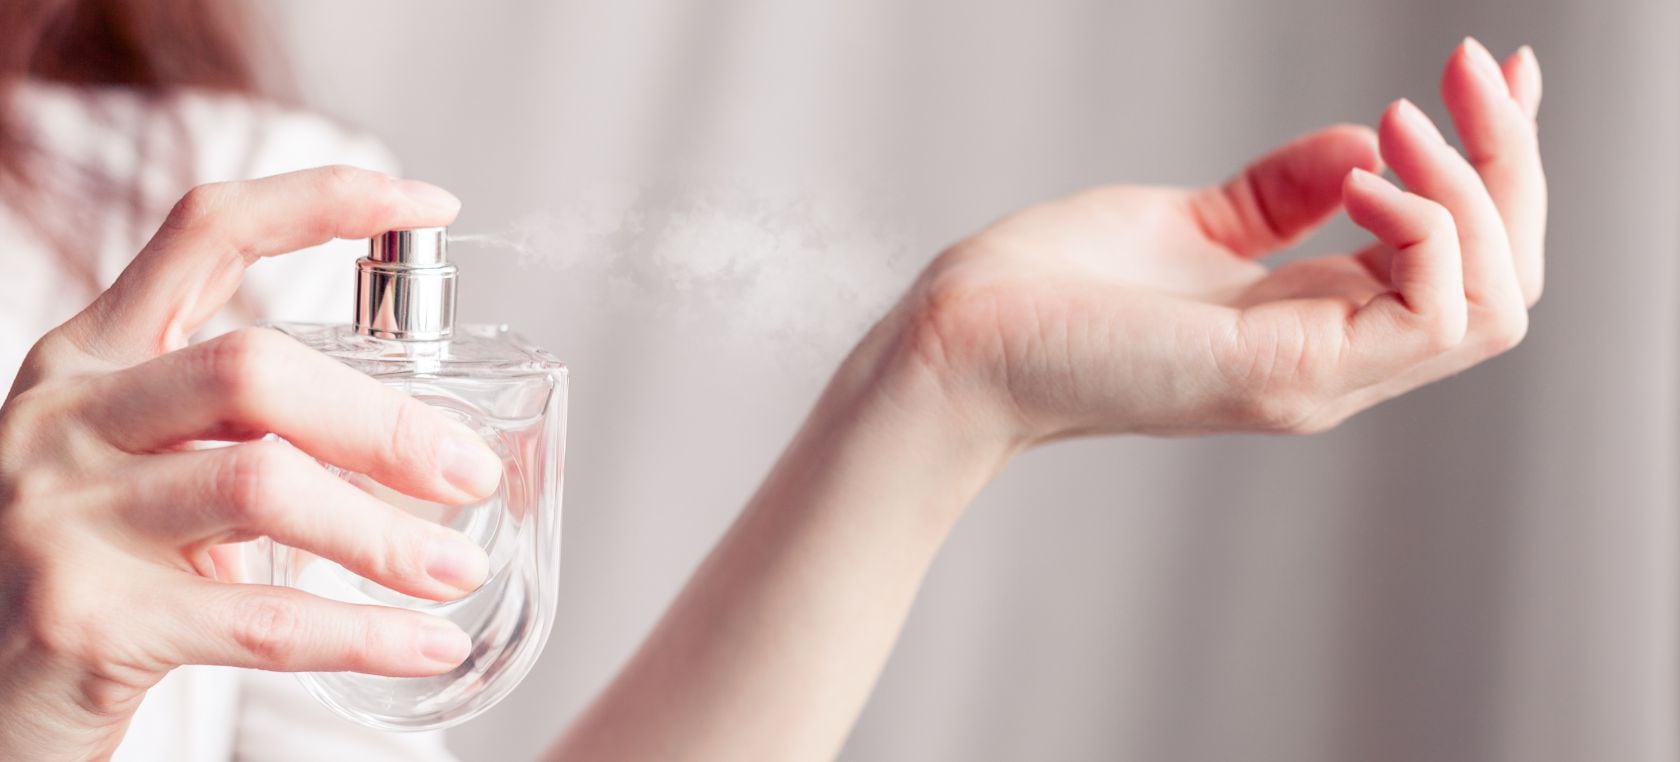 Los seis errores más comunes y fatales que cometes al usar perfume | Moda |  LOS40